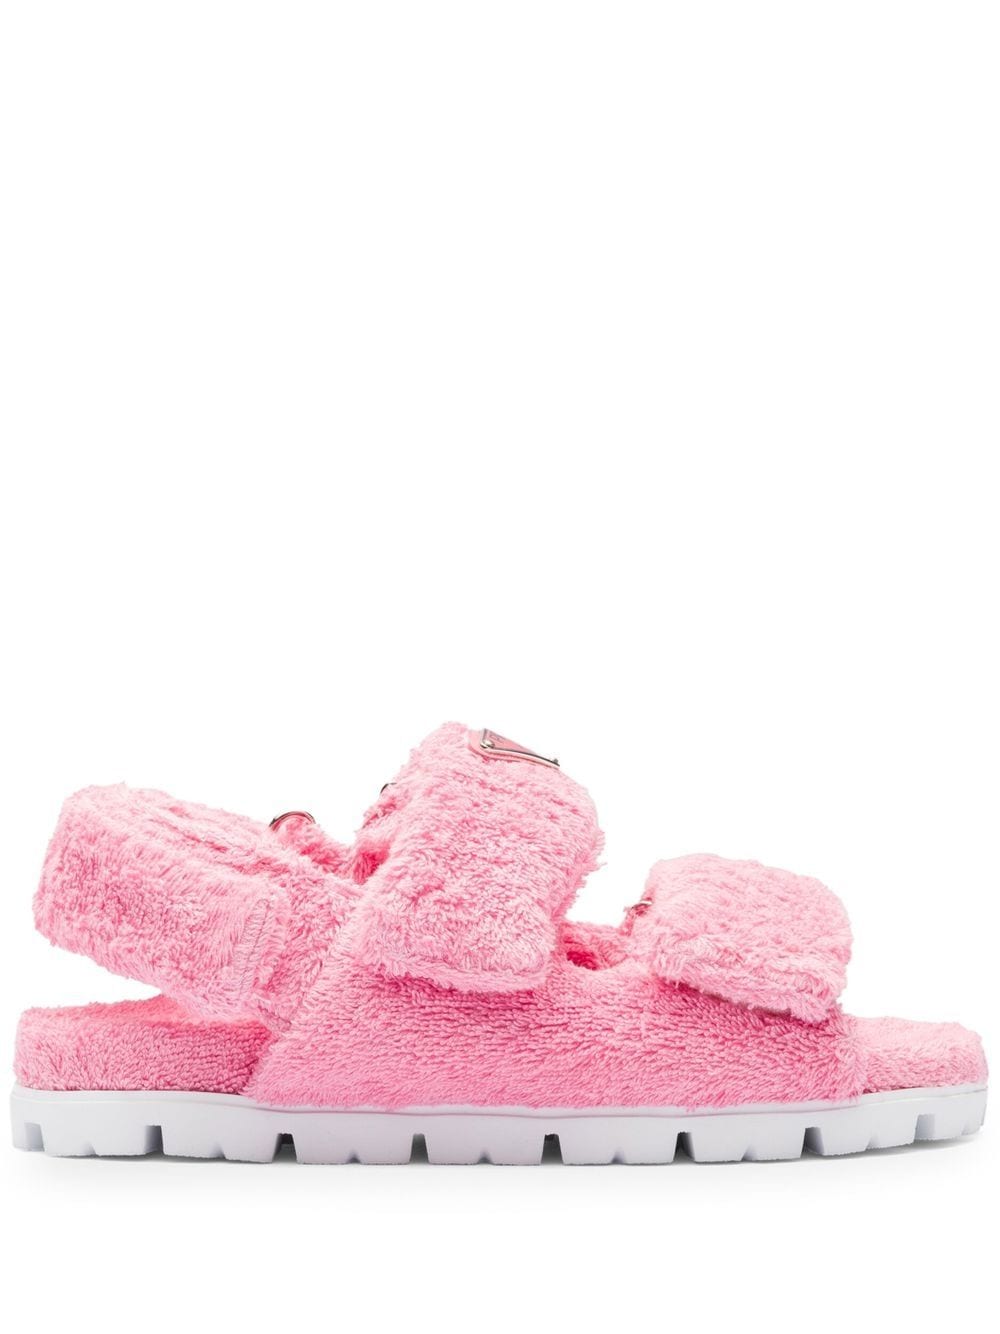 Prada terrycloth slingback sandals - Pink